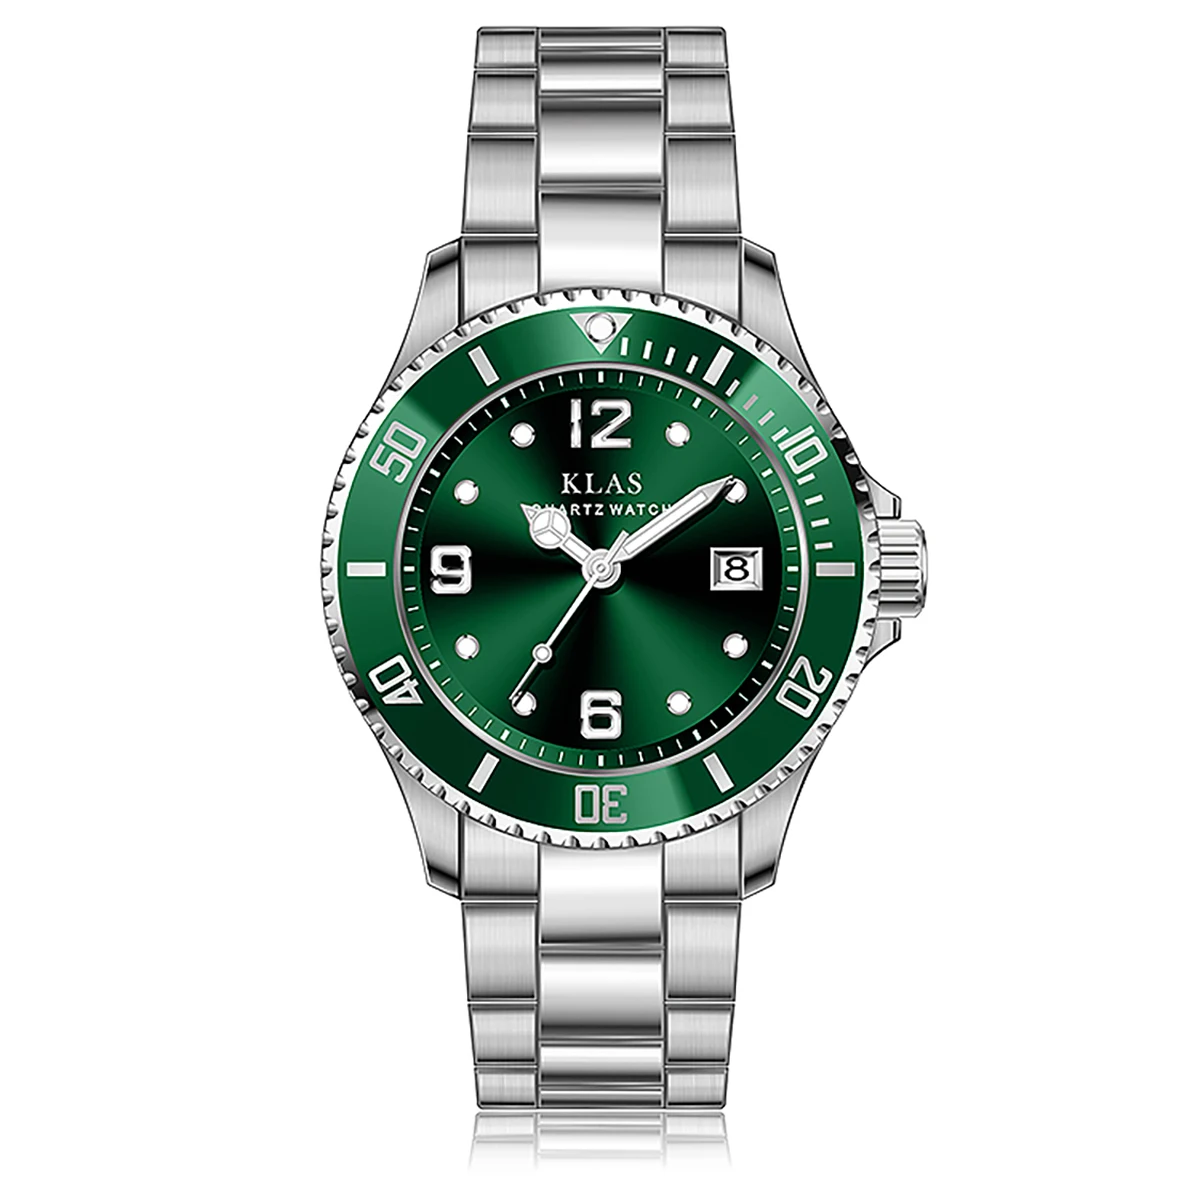 Klas Freeshipping Package Gitf Box Men's Wrist Watch  Waterproof Steel Quartz Leisure Style Luxury Brand Clocks